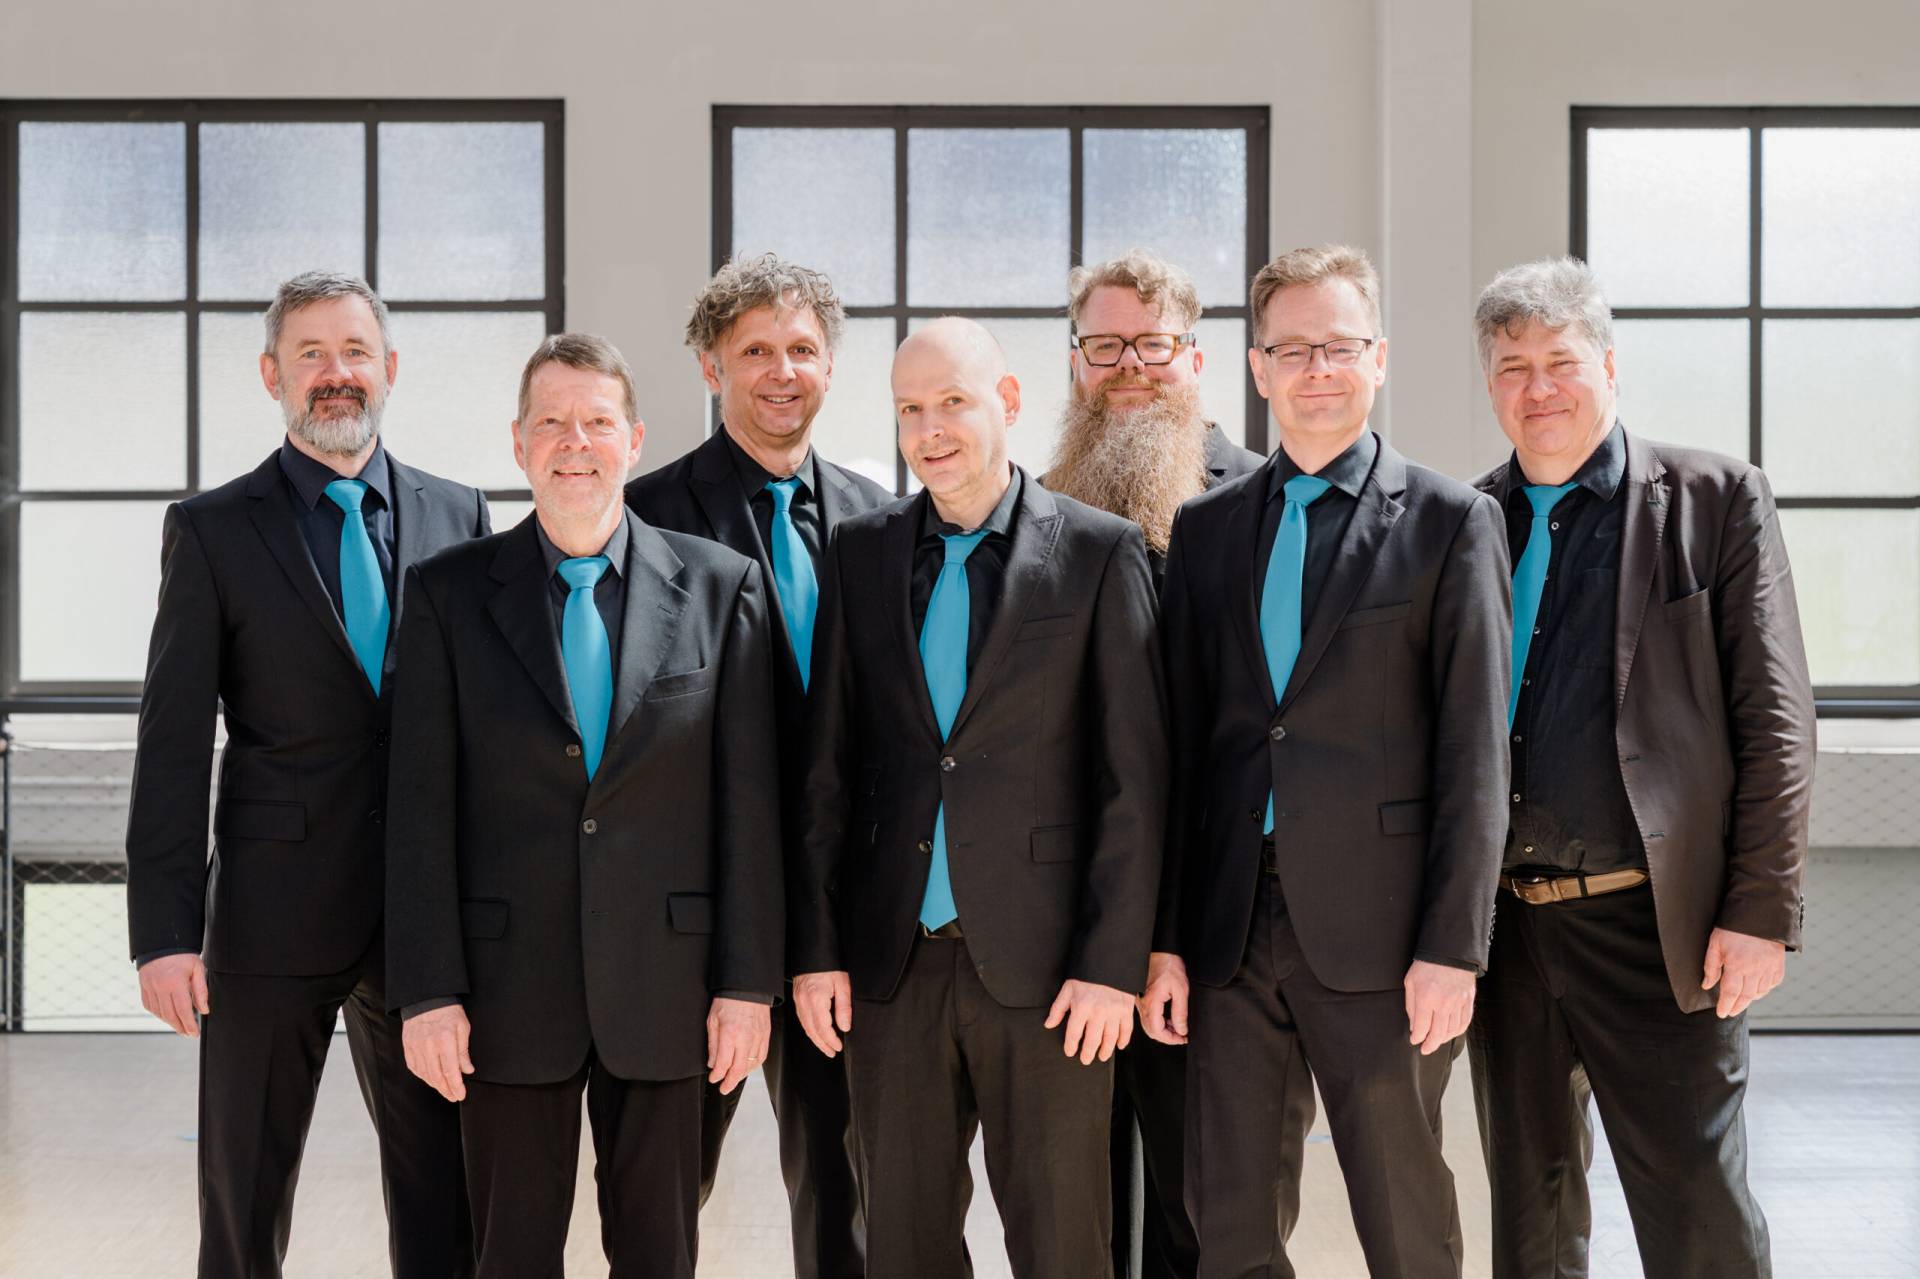 Sieben lächelnde Männer in schwarzen Anzügen und blauen Krawatten vor einer hellen Fensterfront